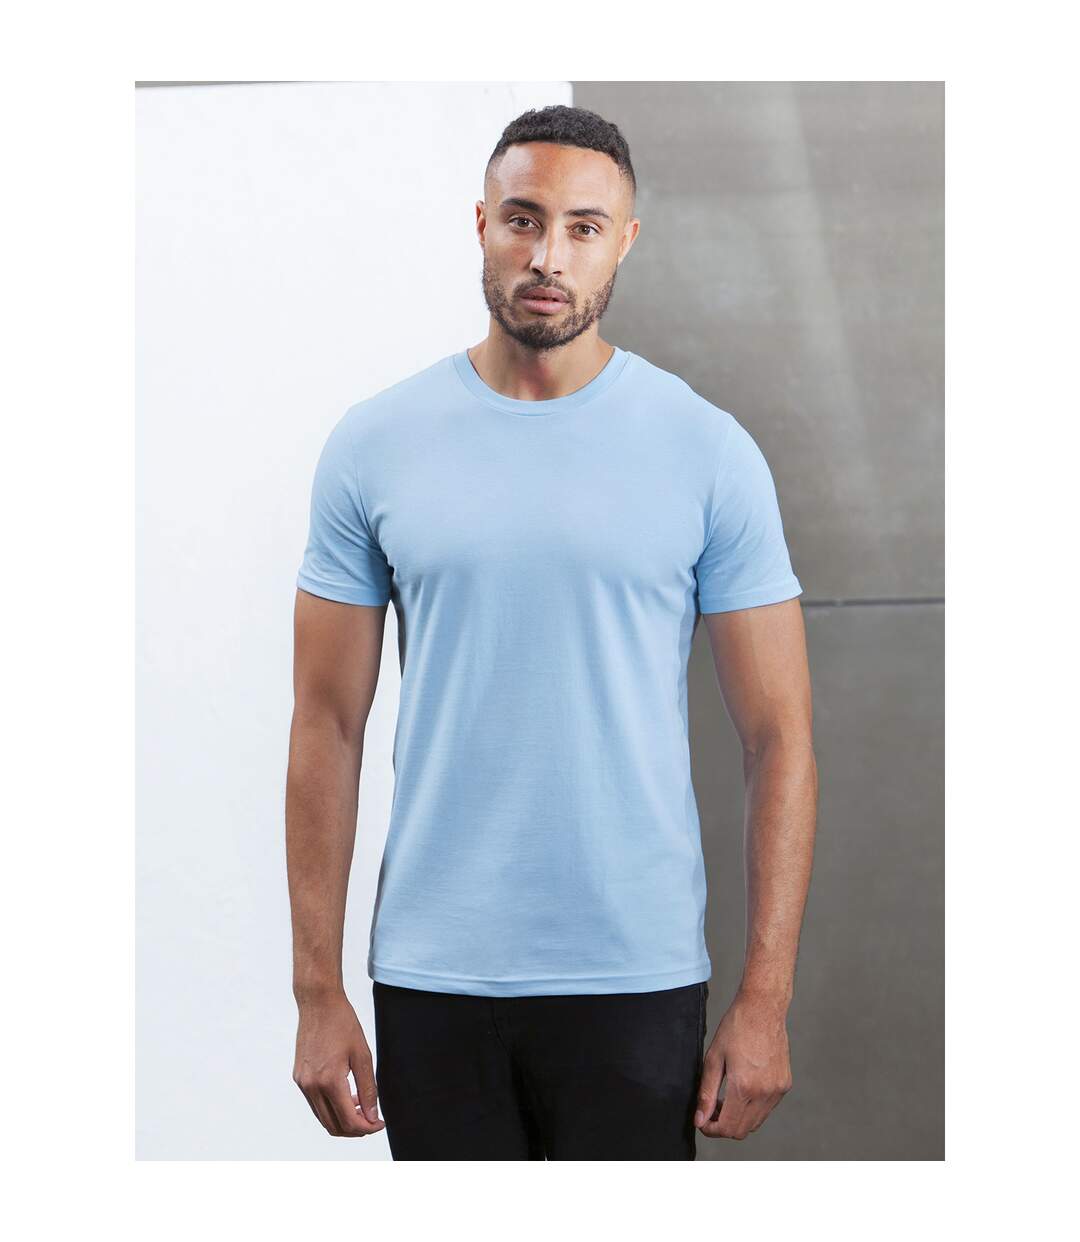 Mantis - T-Shirt ORGANIQUE - Hommes (Bleu ciel) - UTPC3964